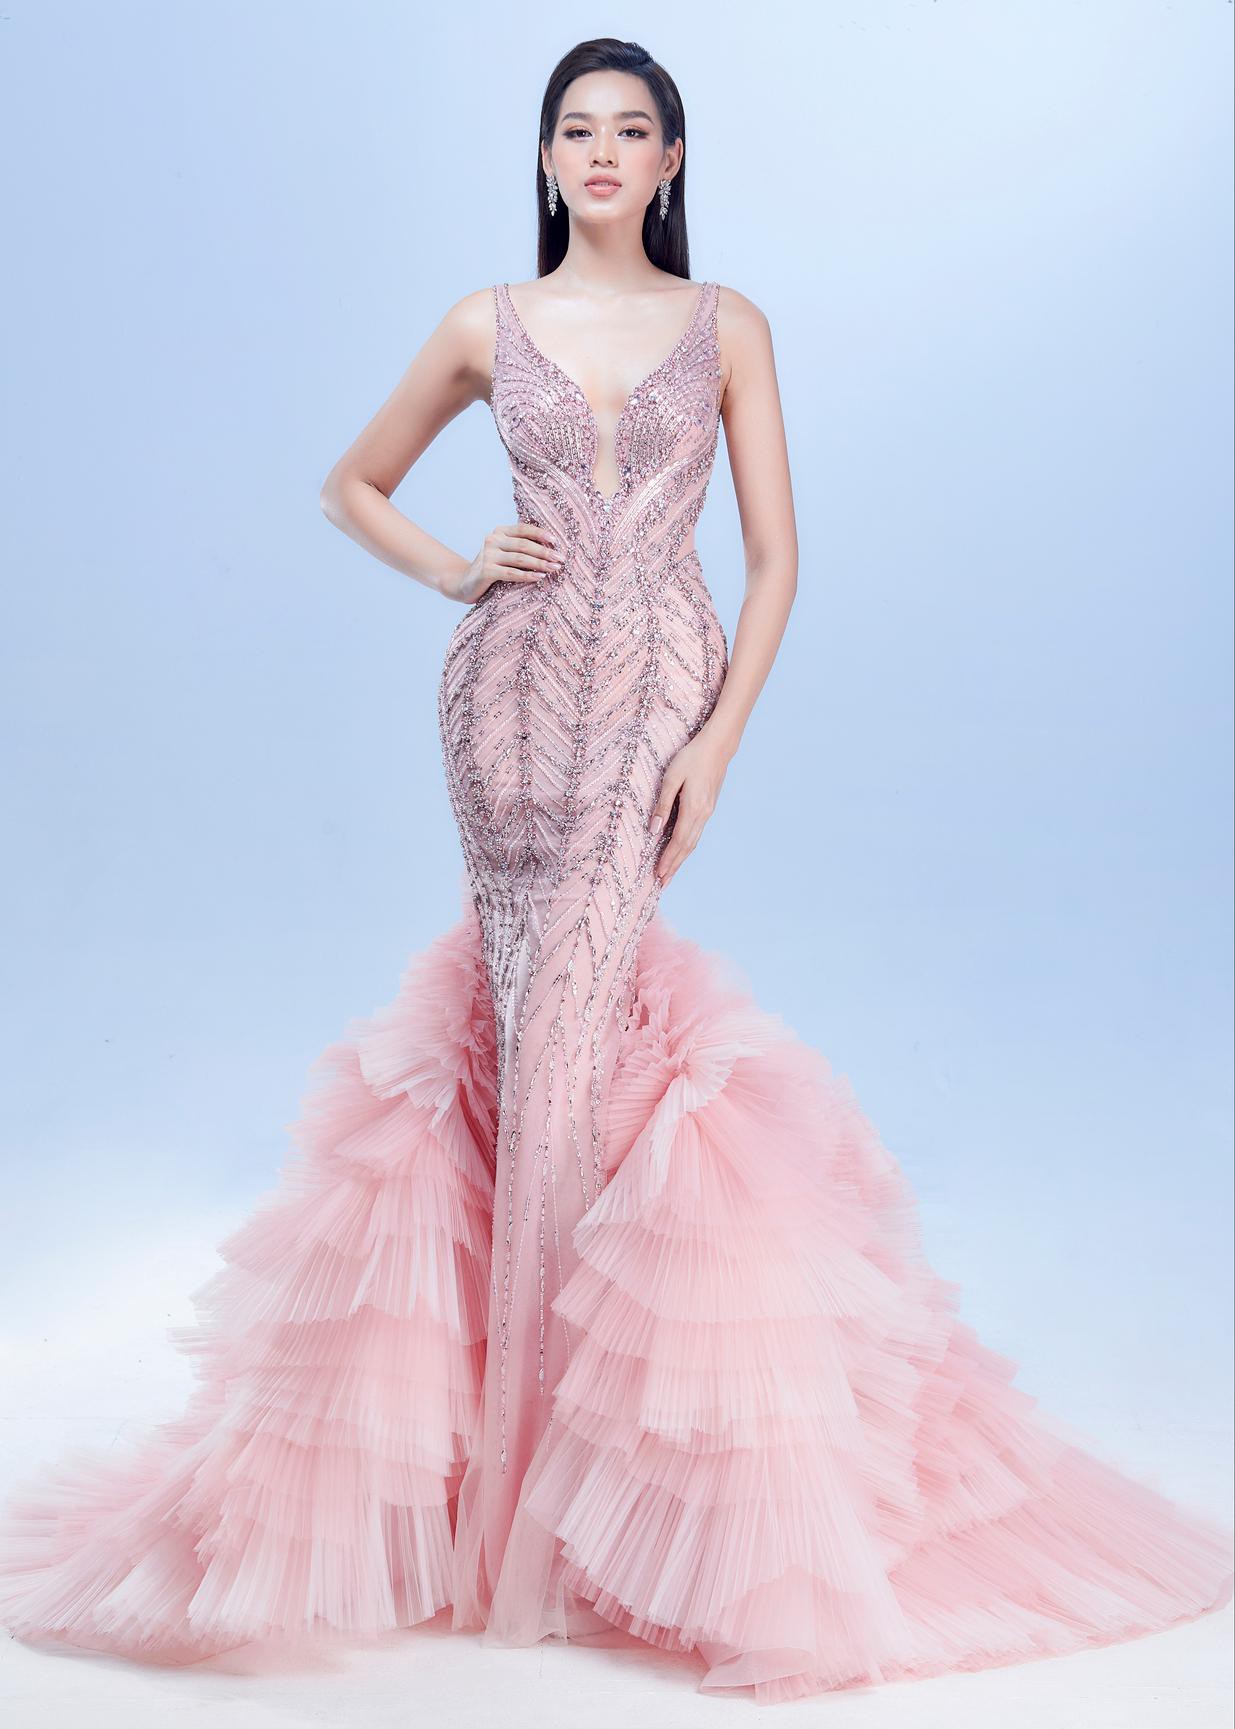 Mặc lại váy chung kết Miss World của Đỗ Thị Hà, Lâm Khánh Chi hóa búp bê quyến rũ ở tuổi 45 - Ảnh 6.